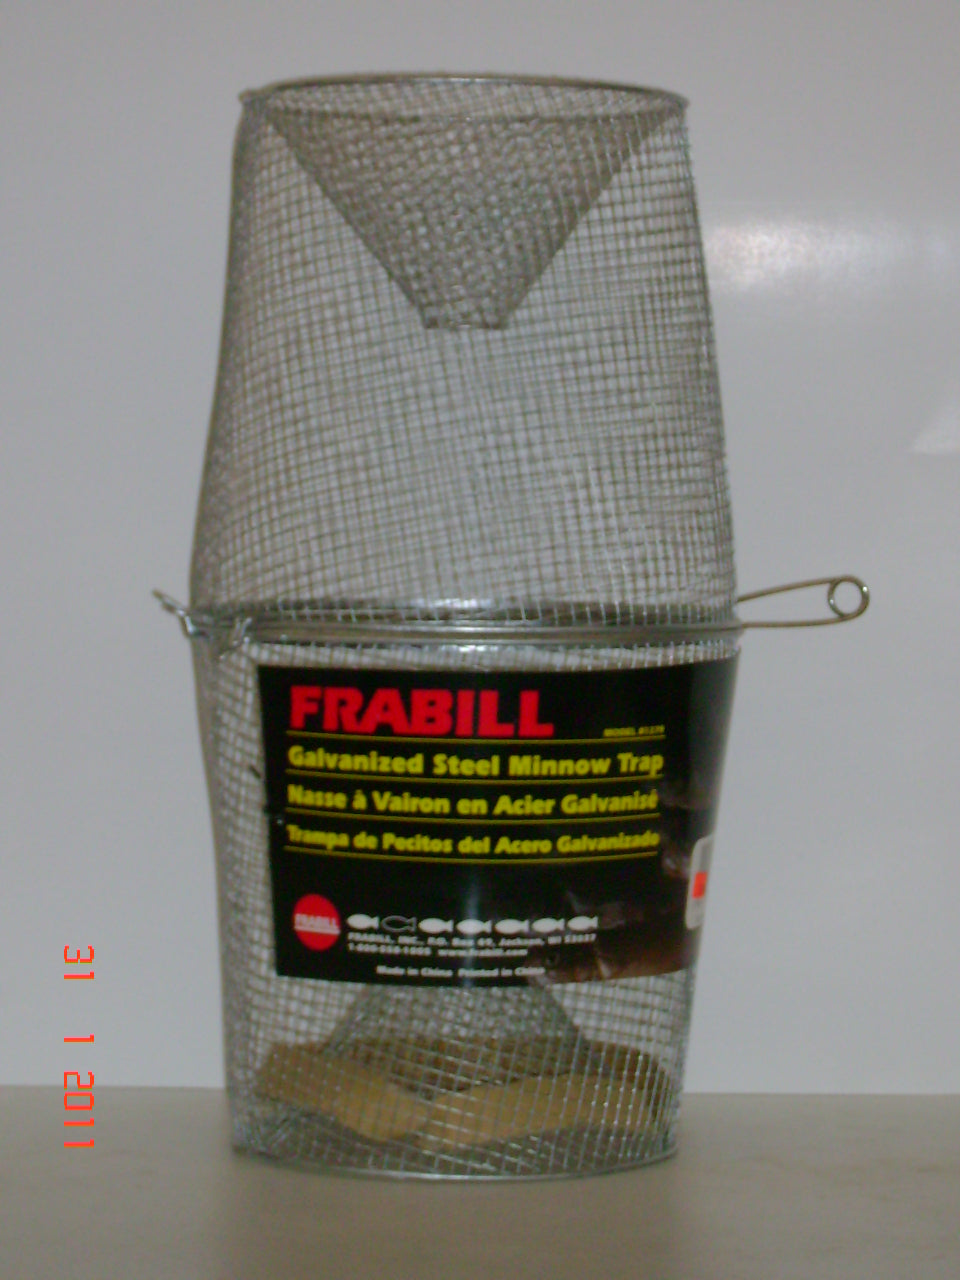 Frabill Minnow Trap – wardsstore